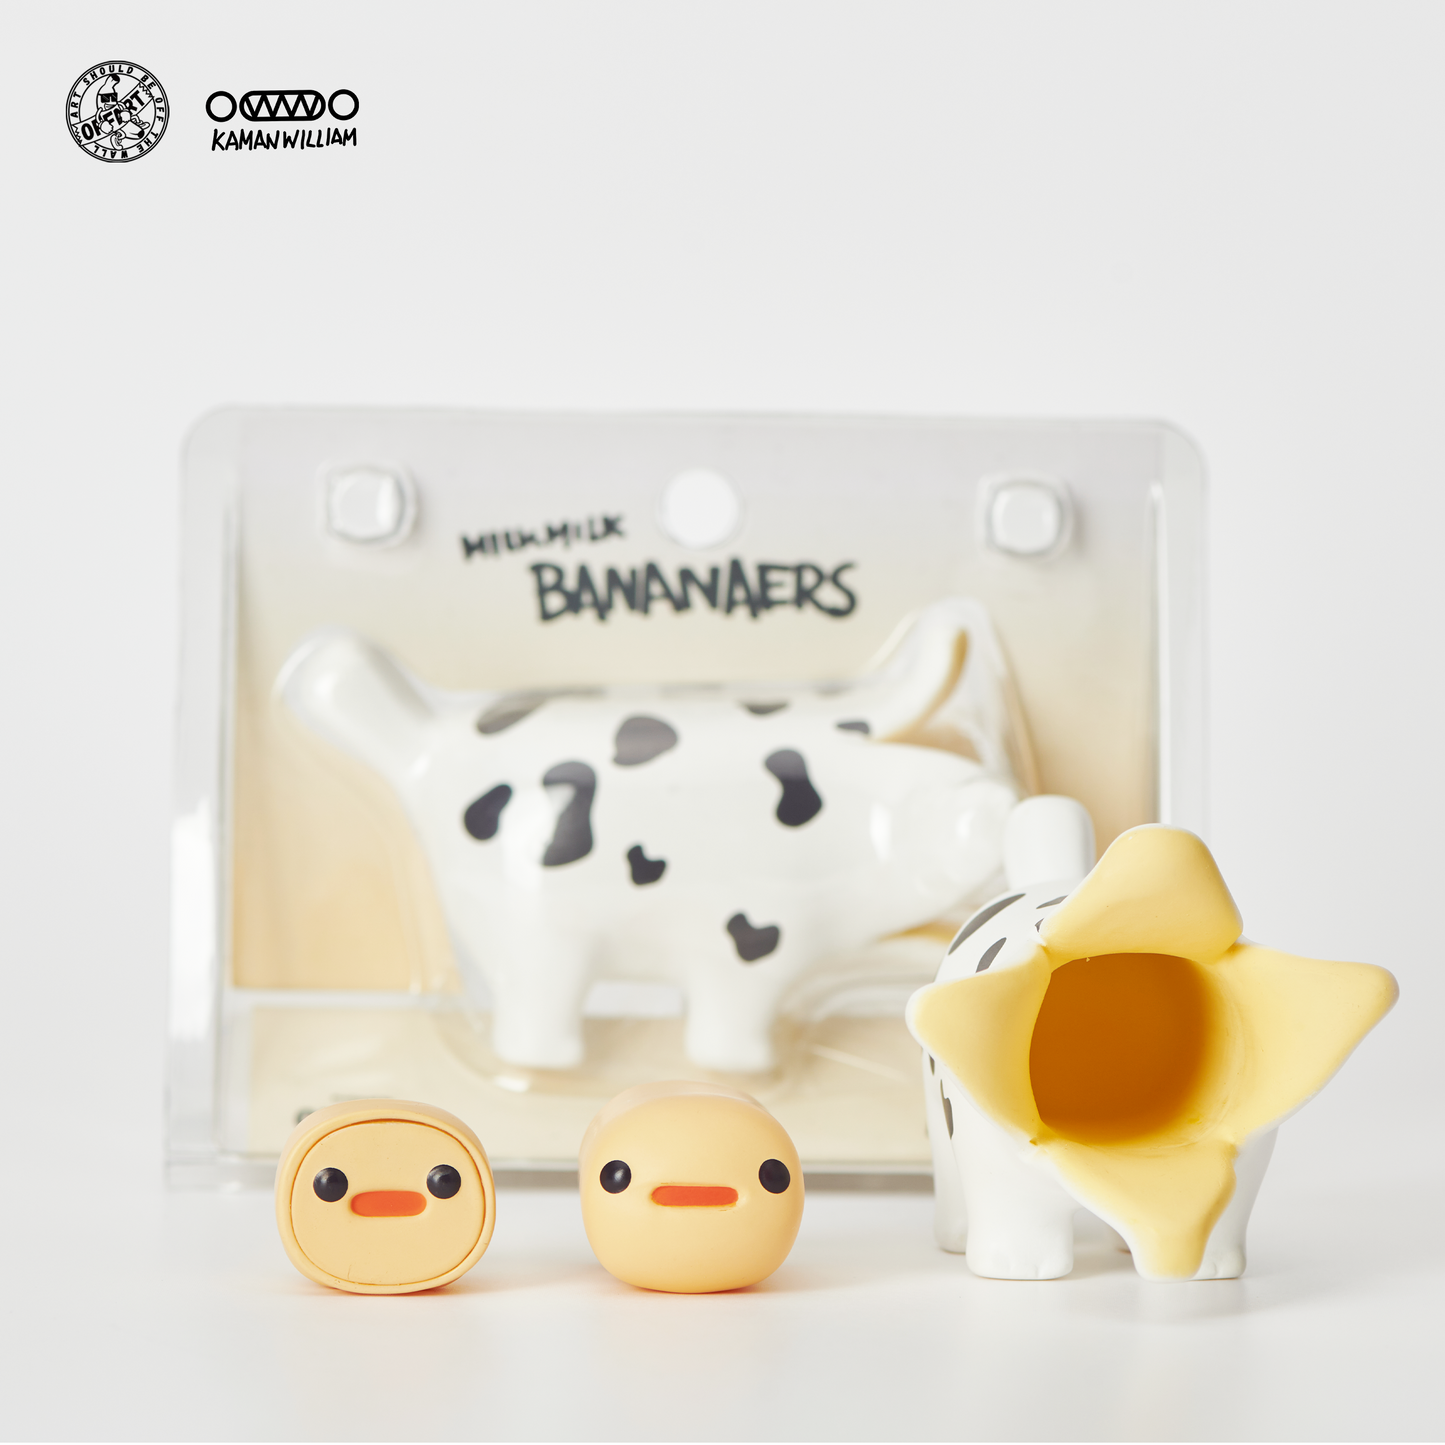 OFFART X Kamanwilliam Mini Bananaer Dog Milk Cow Limited Edition